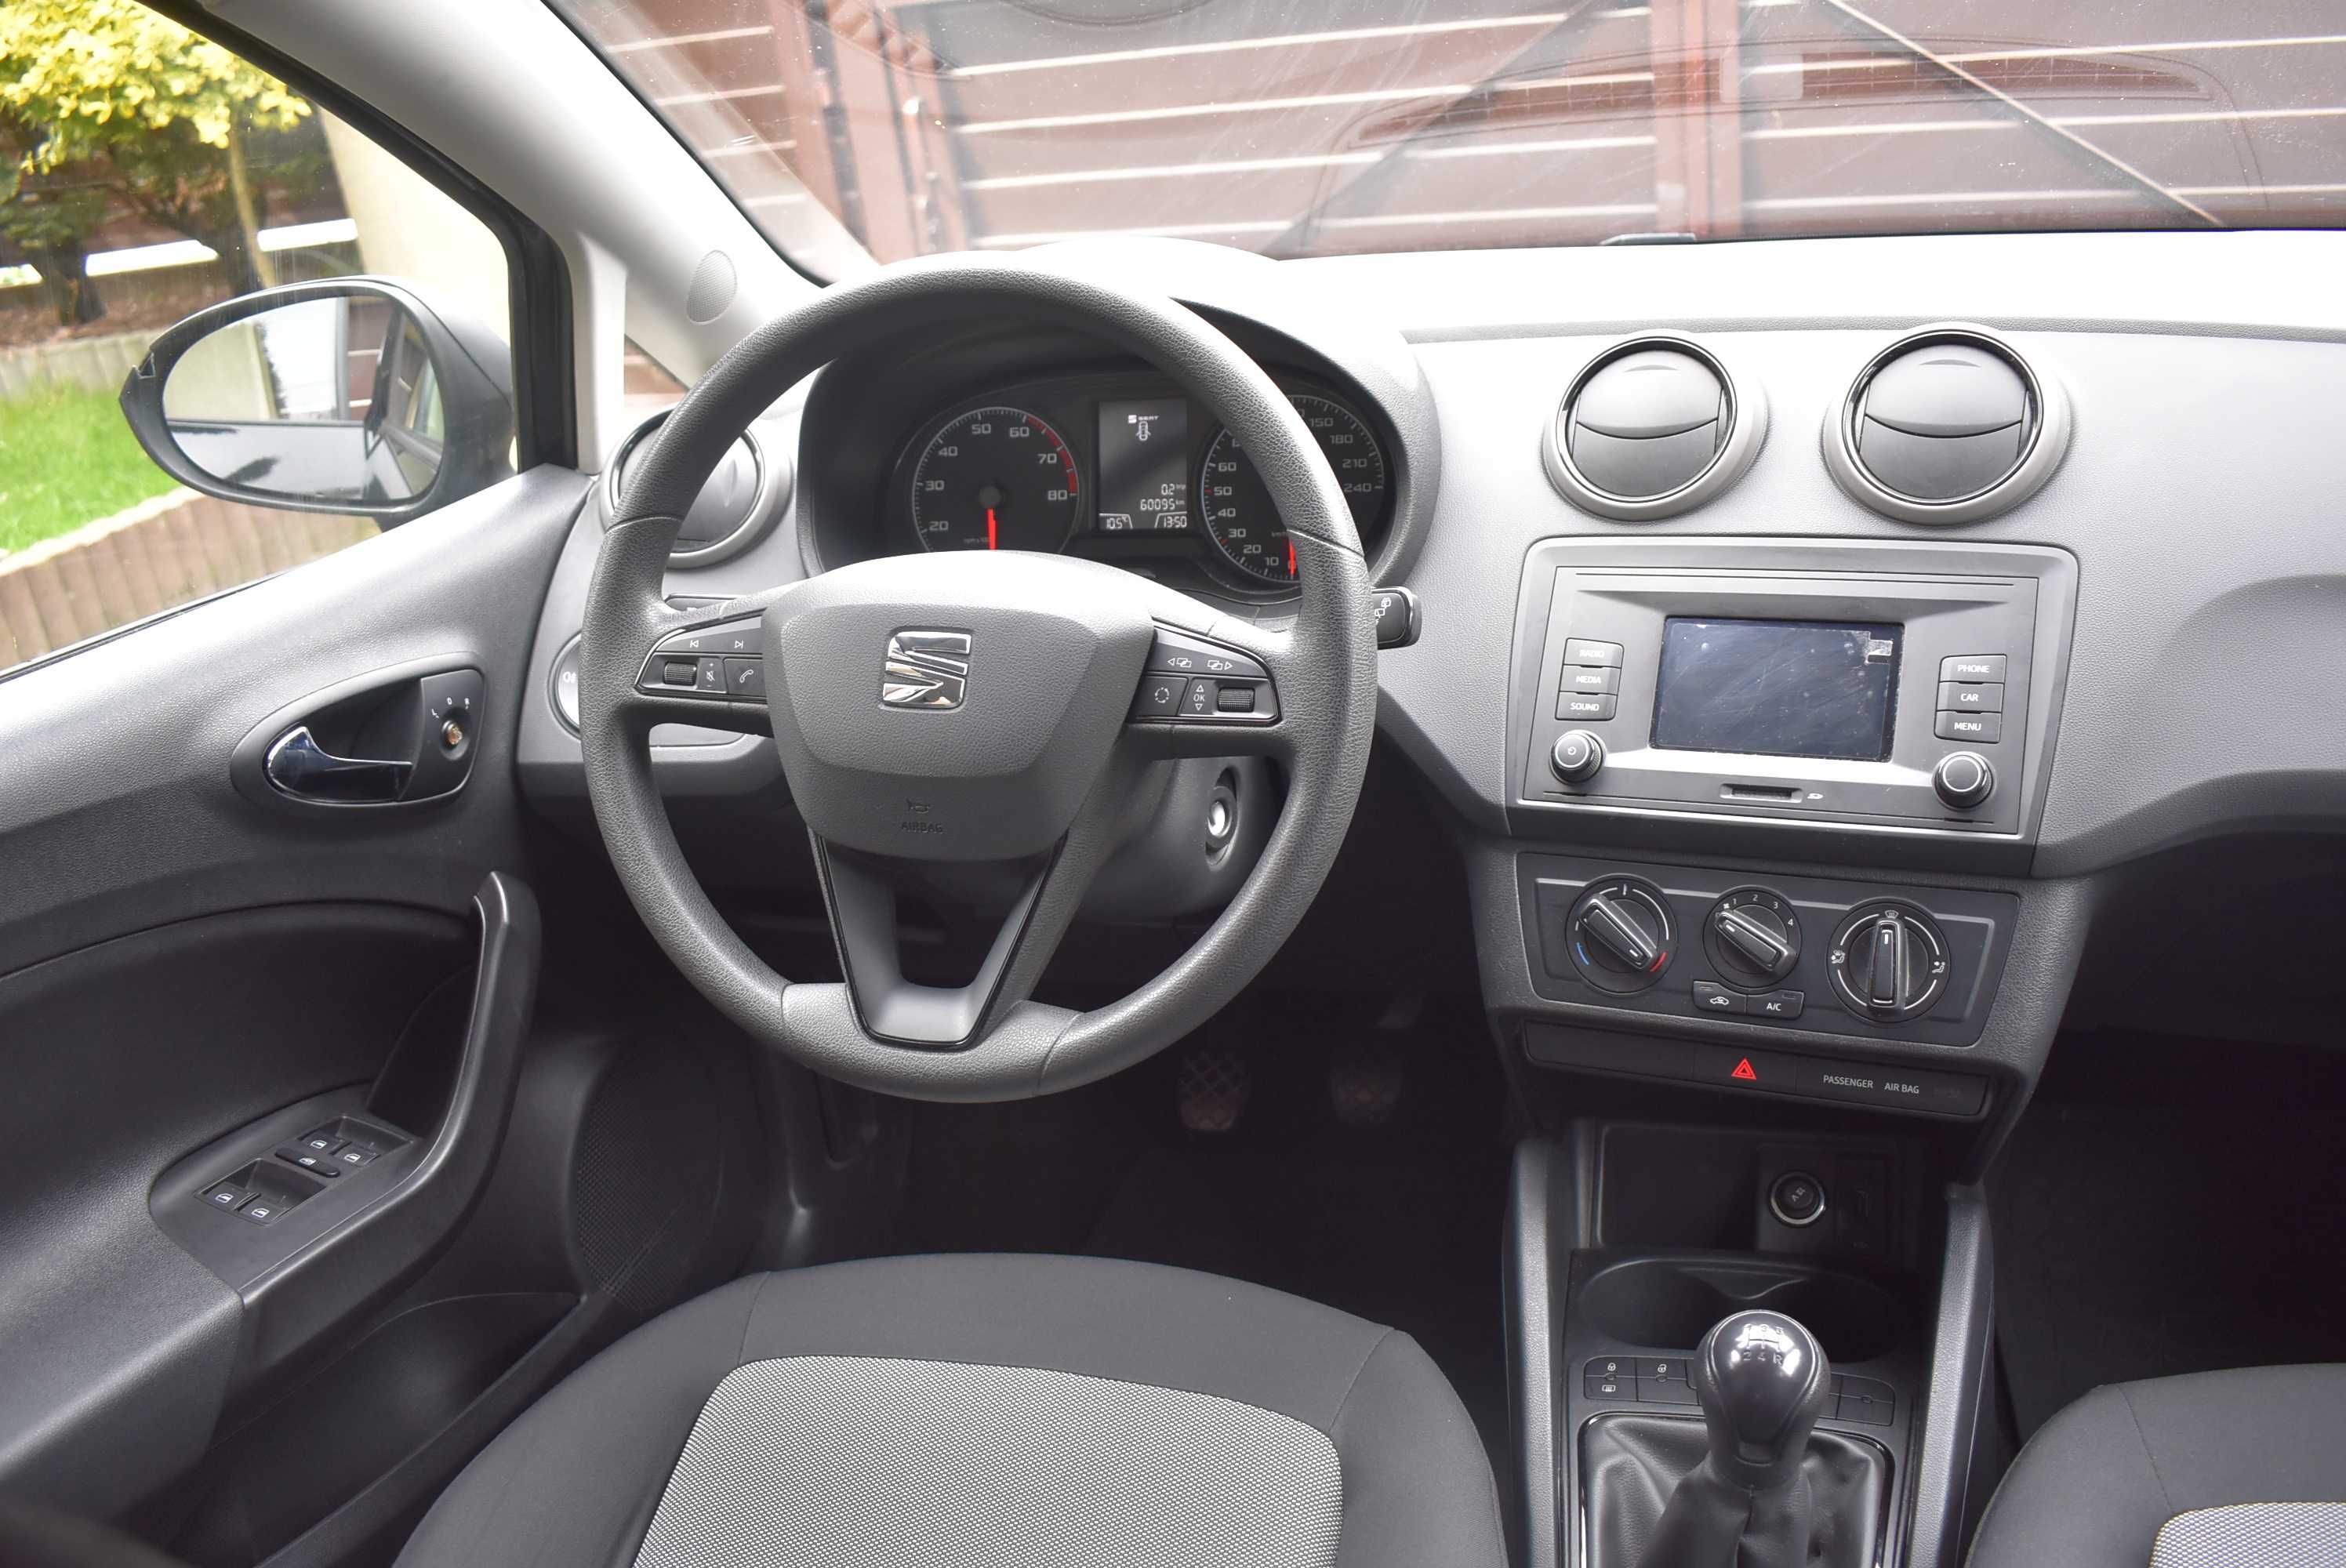 Seat Ibiza 1.0MPI 75KM 60 tys km 1 Właściciel 5 Drzwi Klimatyzacja